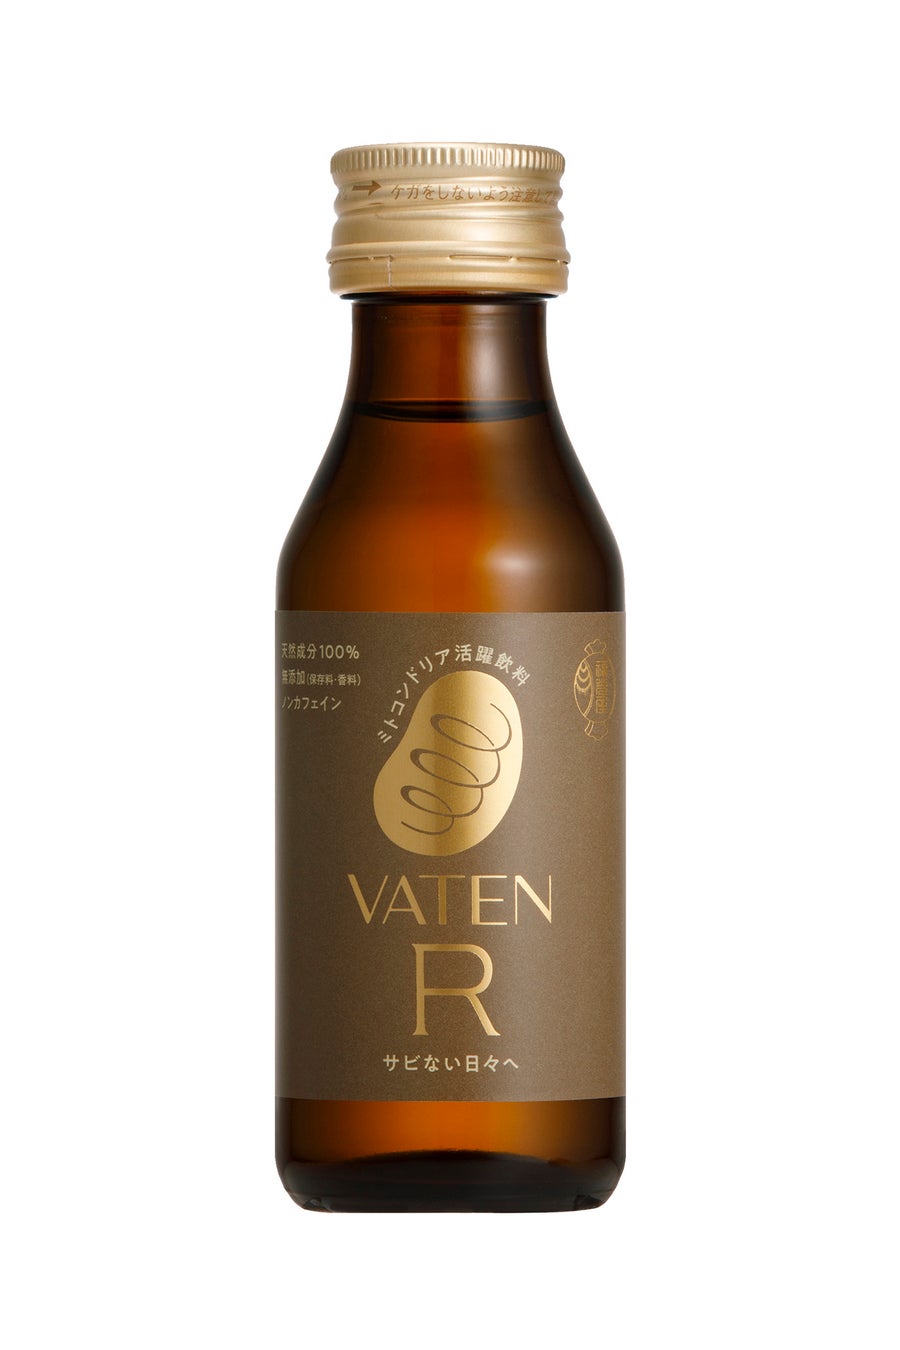 ミトコンドリア活躍飲料の進化版「VATEN R（バテン アール）」8月8日（木）直営限定発売